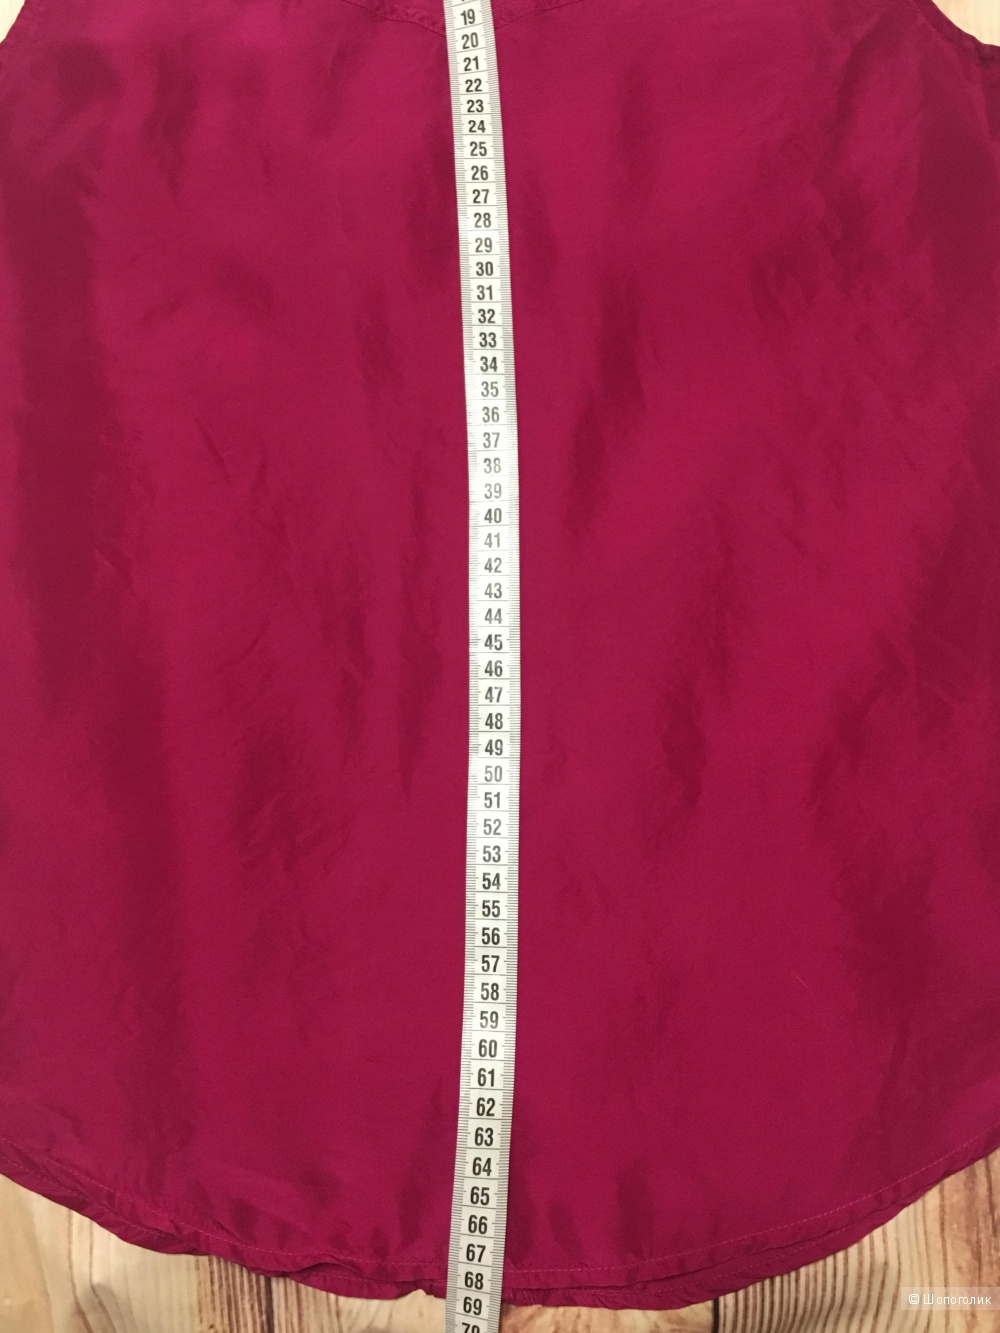 Шелковая блуза Asos, размер 10UK/38EU/6US. На рос. 46